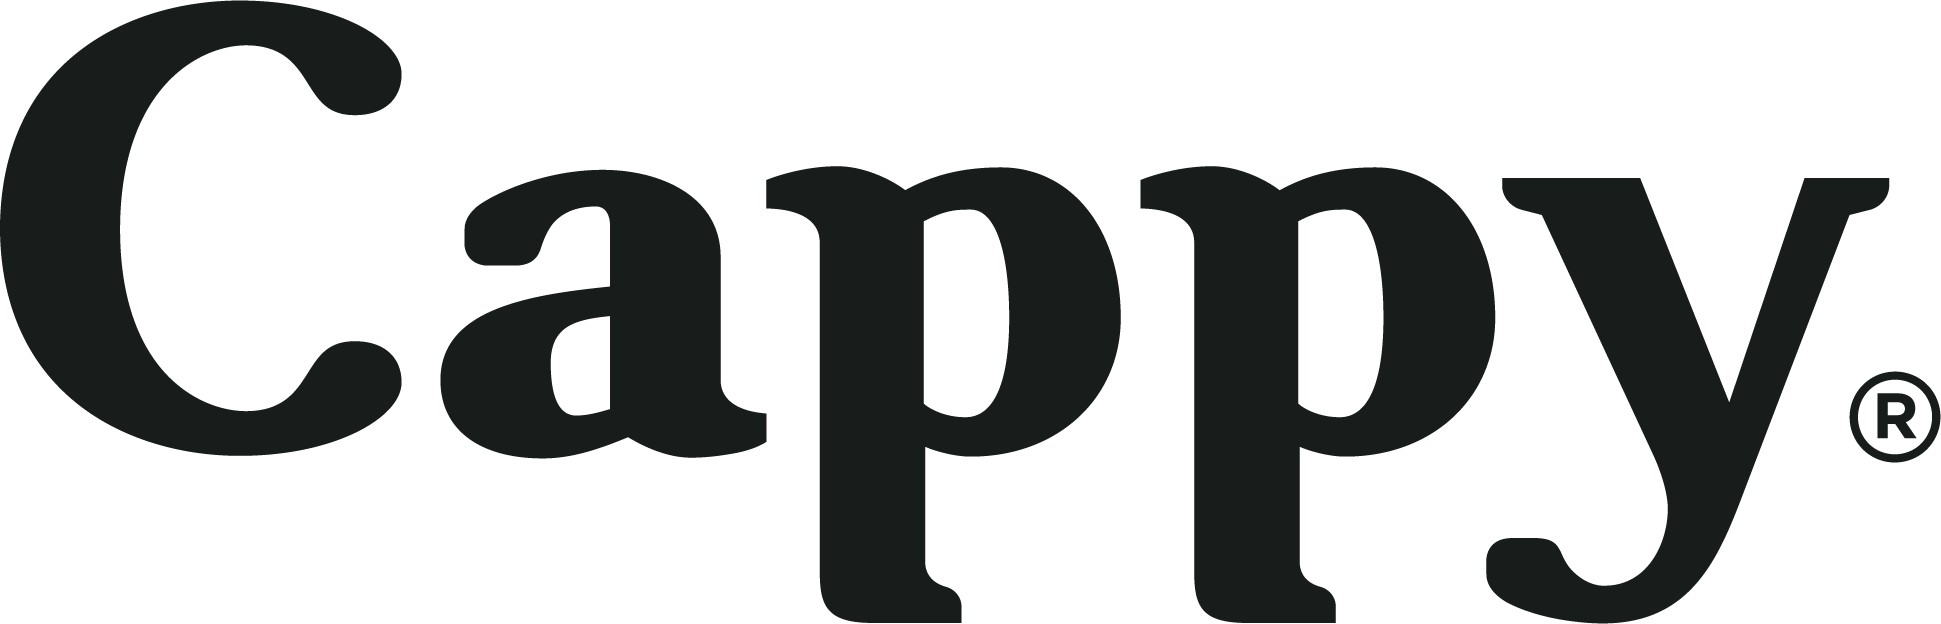 Cappy logo 2020 V2